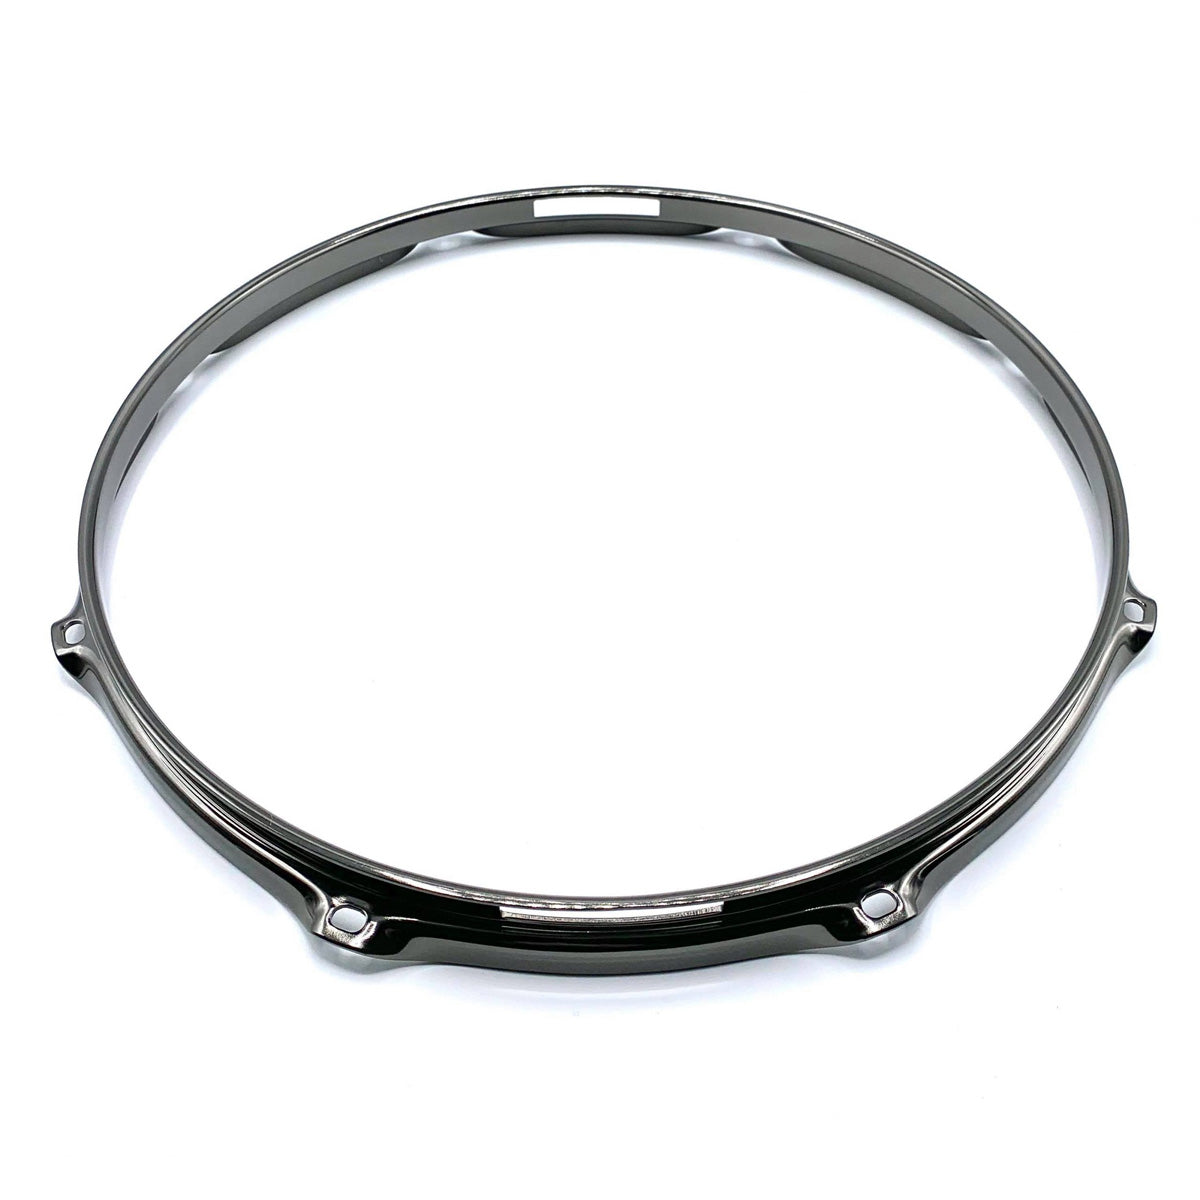 Worldmax 2.3mm Steel Hoop in Black - Snare Side (1 Per Pack)